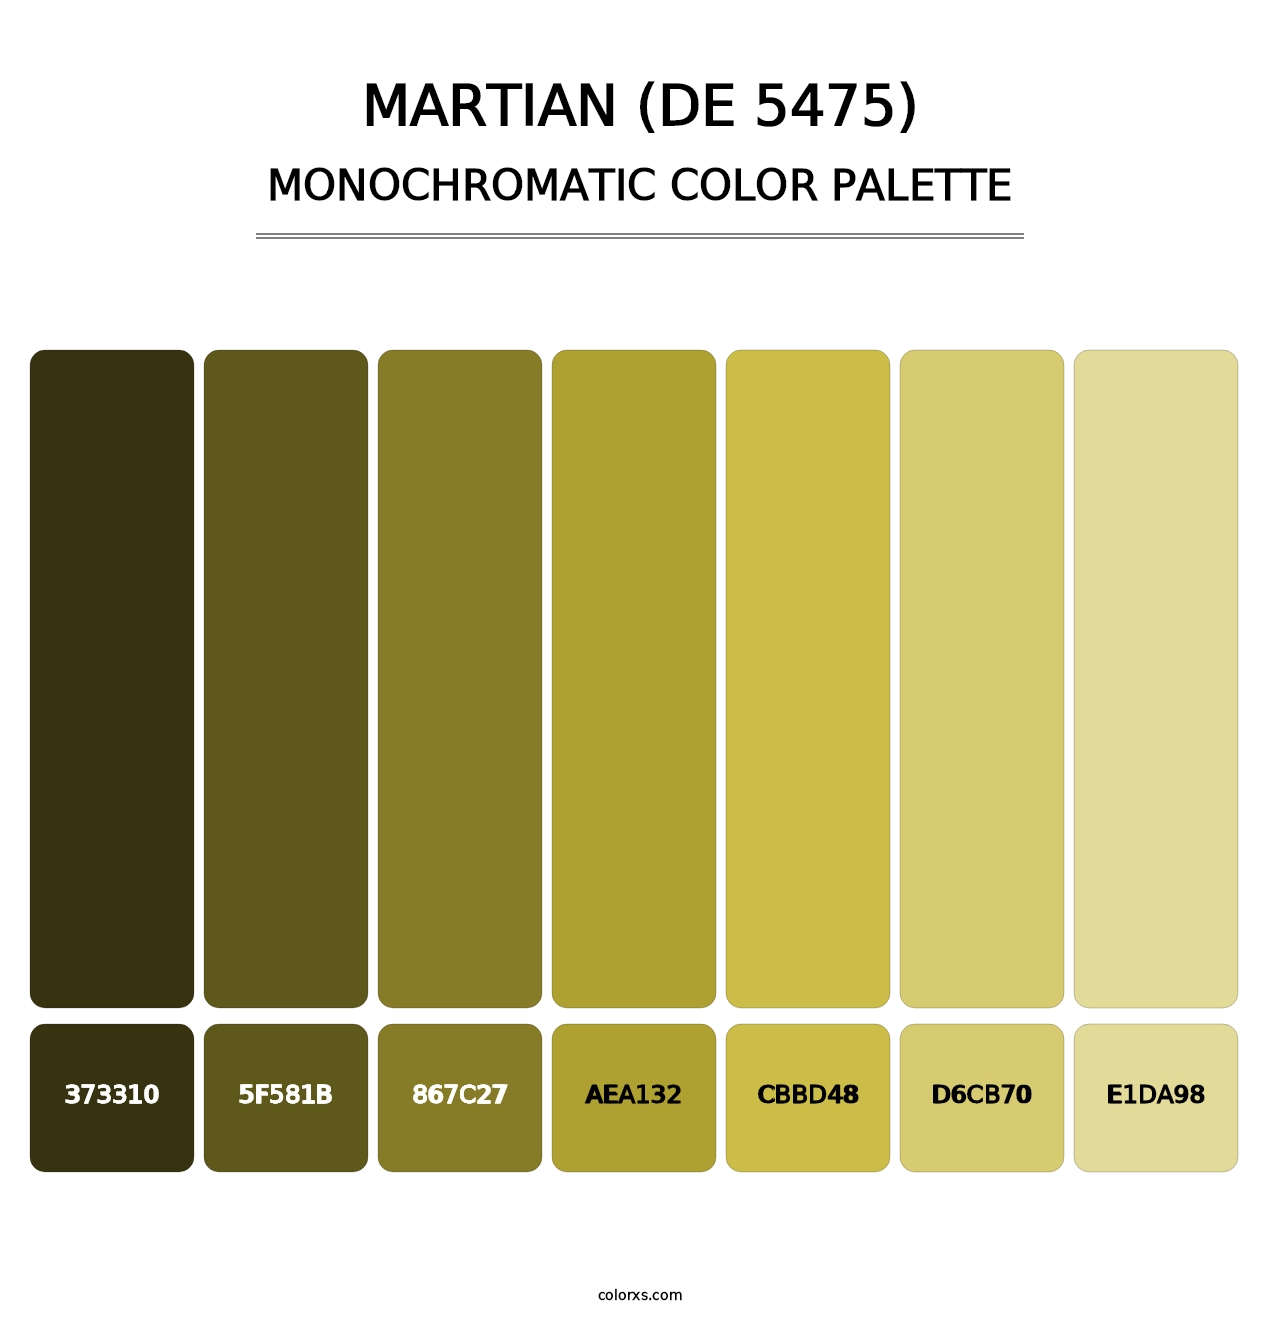 Martian (DE 5475) - Monochromatic Color Palette